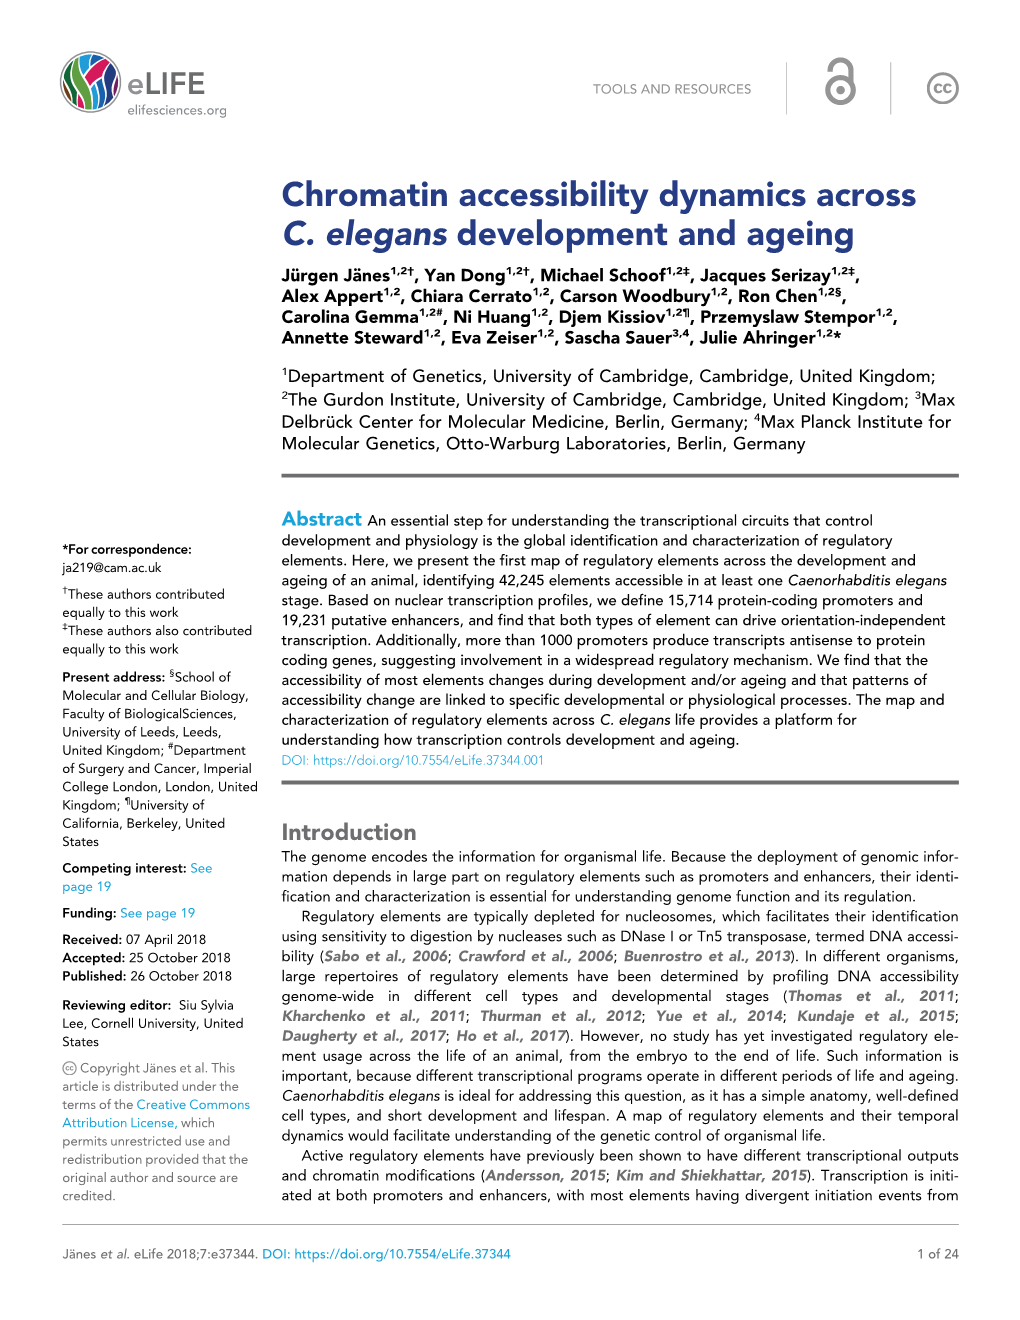 Chromatin Accessibility Dynamics Across C. Elegans Development